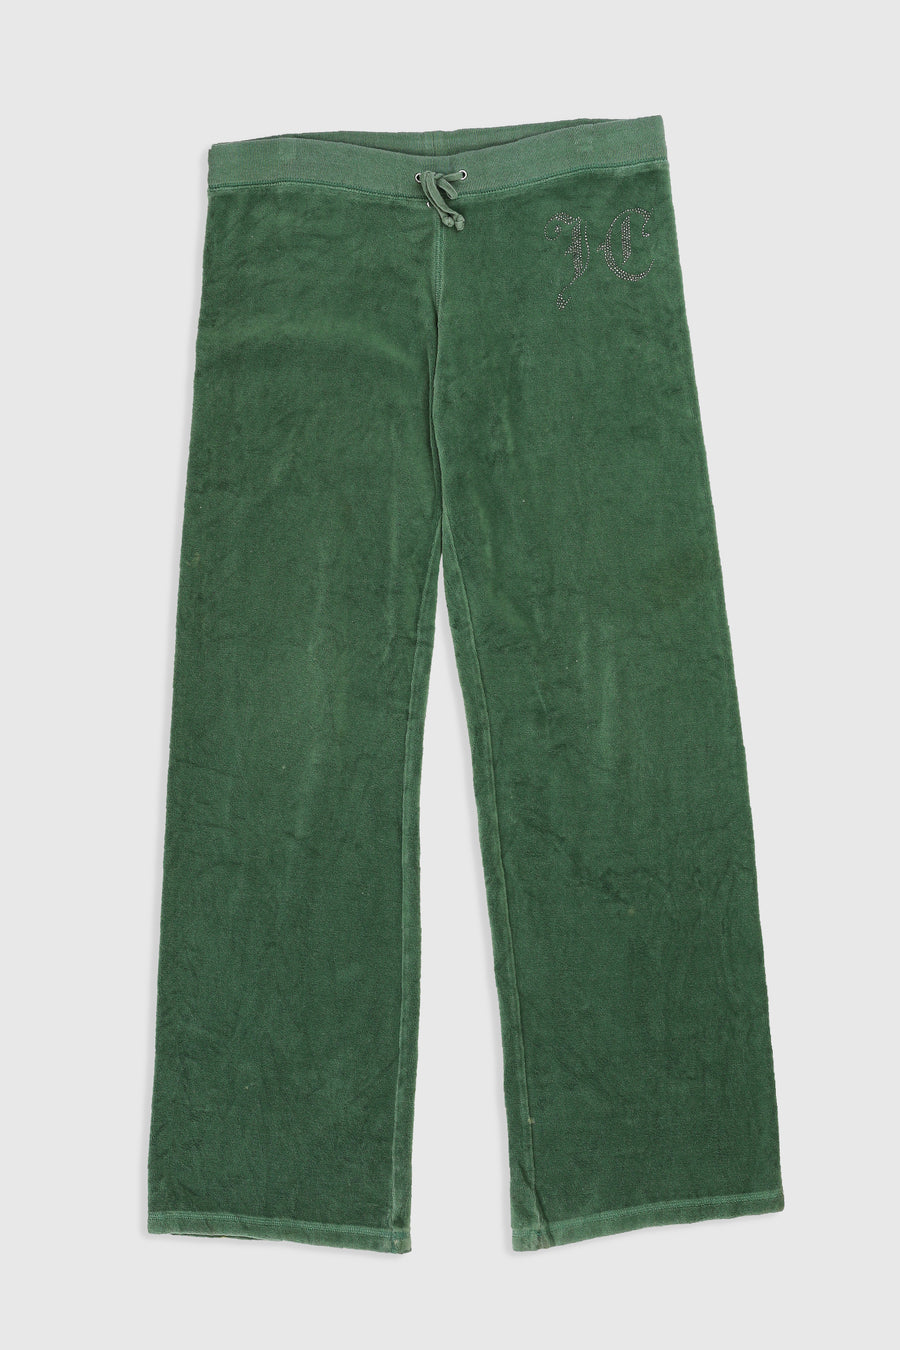 Vintage Juicy Couture Velour Pants